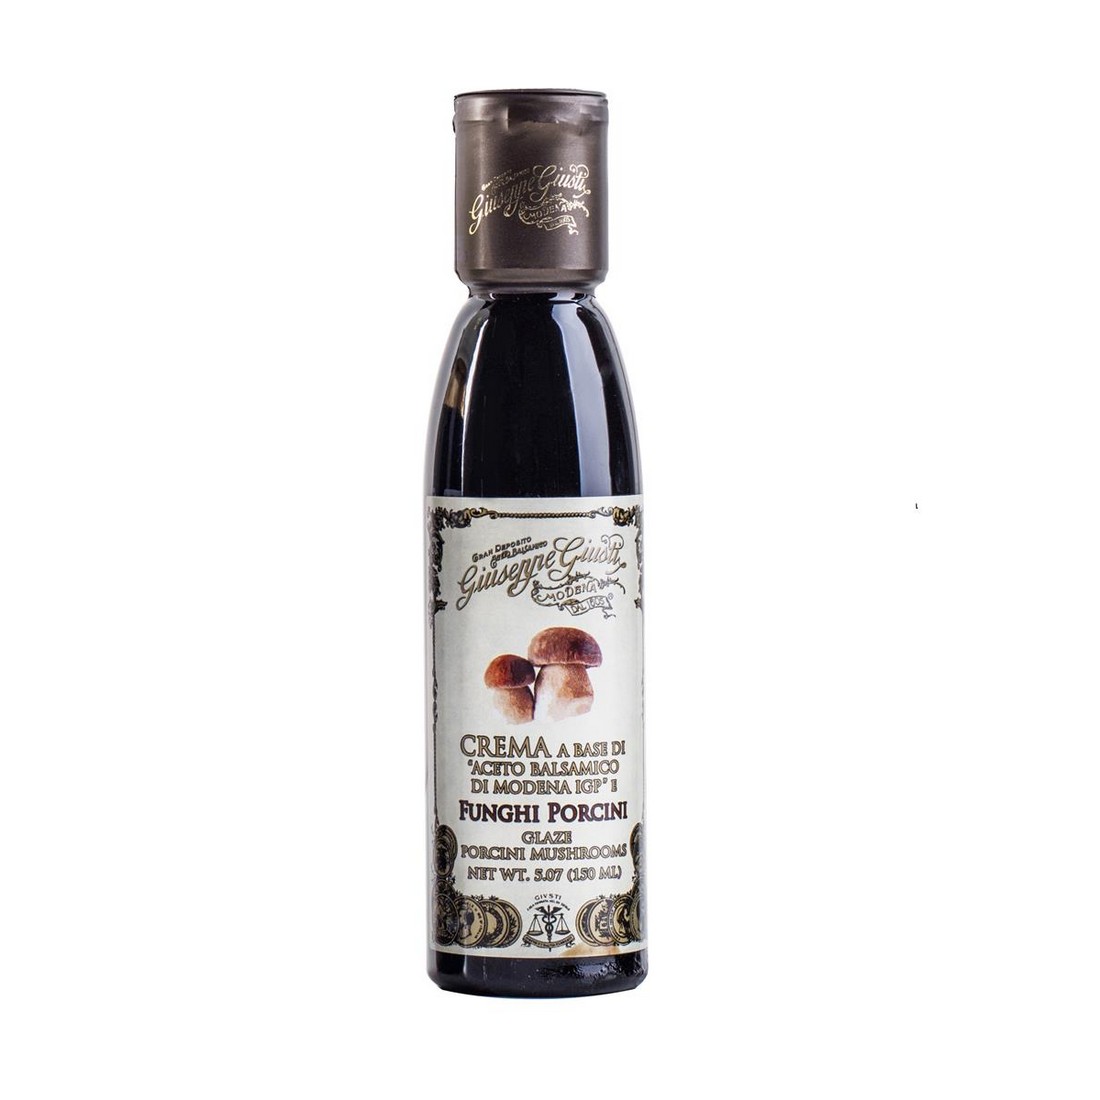 photo Cream based on balsamic vinegar of Modena PGI - Porcini mushrooms - 150 ml